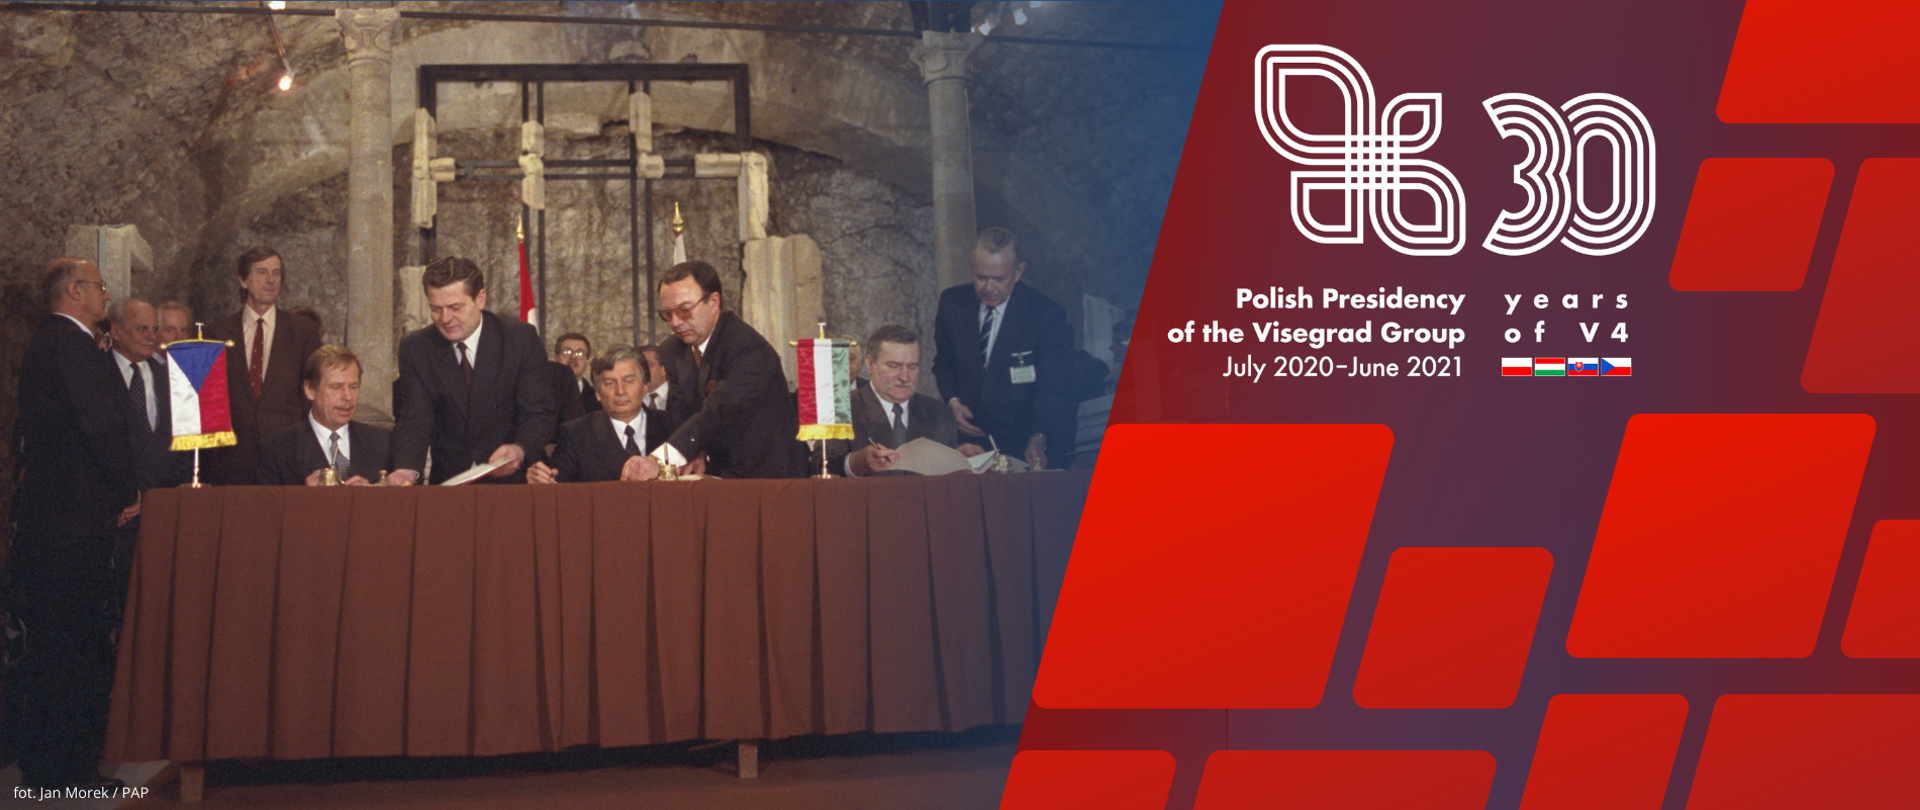 Trzydzieści lat temu, 15 lutego 1991 r., prezydenci Polski i Czech oraz premier Węgier podpisali na zamku w Wyszehradzie na Węgrzech Deklarację o współpracy Czeskiej i Słowackiej Republiki Federacyjnej, Rzeczypospolitej Polskiej i Republiki Węgierskiej w dążeniu do integracji europejskiej.